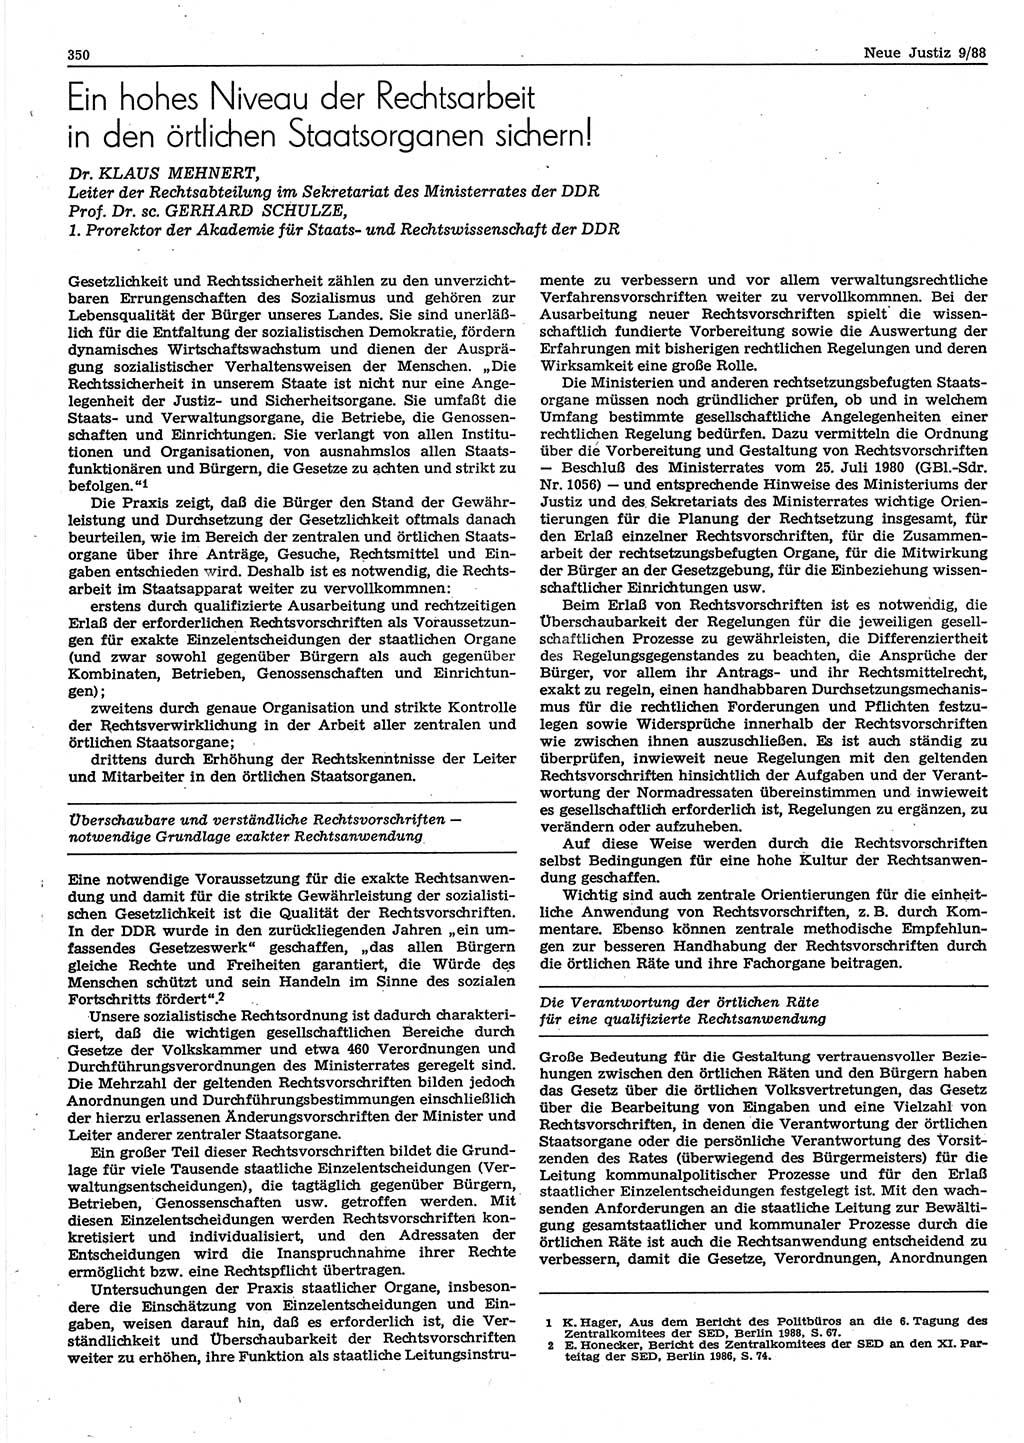 Neue Justiz (NJ), Zeitschrift für sozialistisches Recht und Gesetzlichkeit [Deutsche Demokratische Republik (DDR)], 42. Jahrgang 1988, Seite 350 (NJ DDR 1988, S. 350)